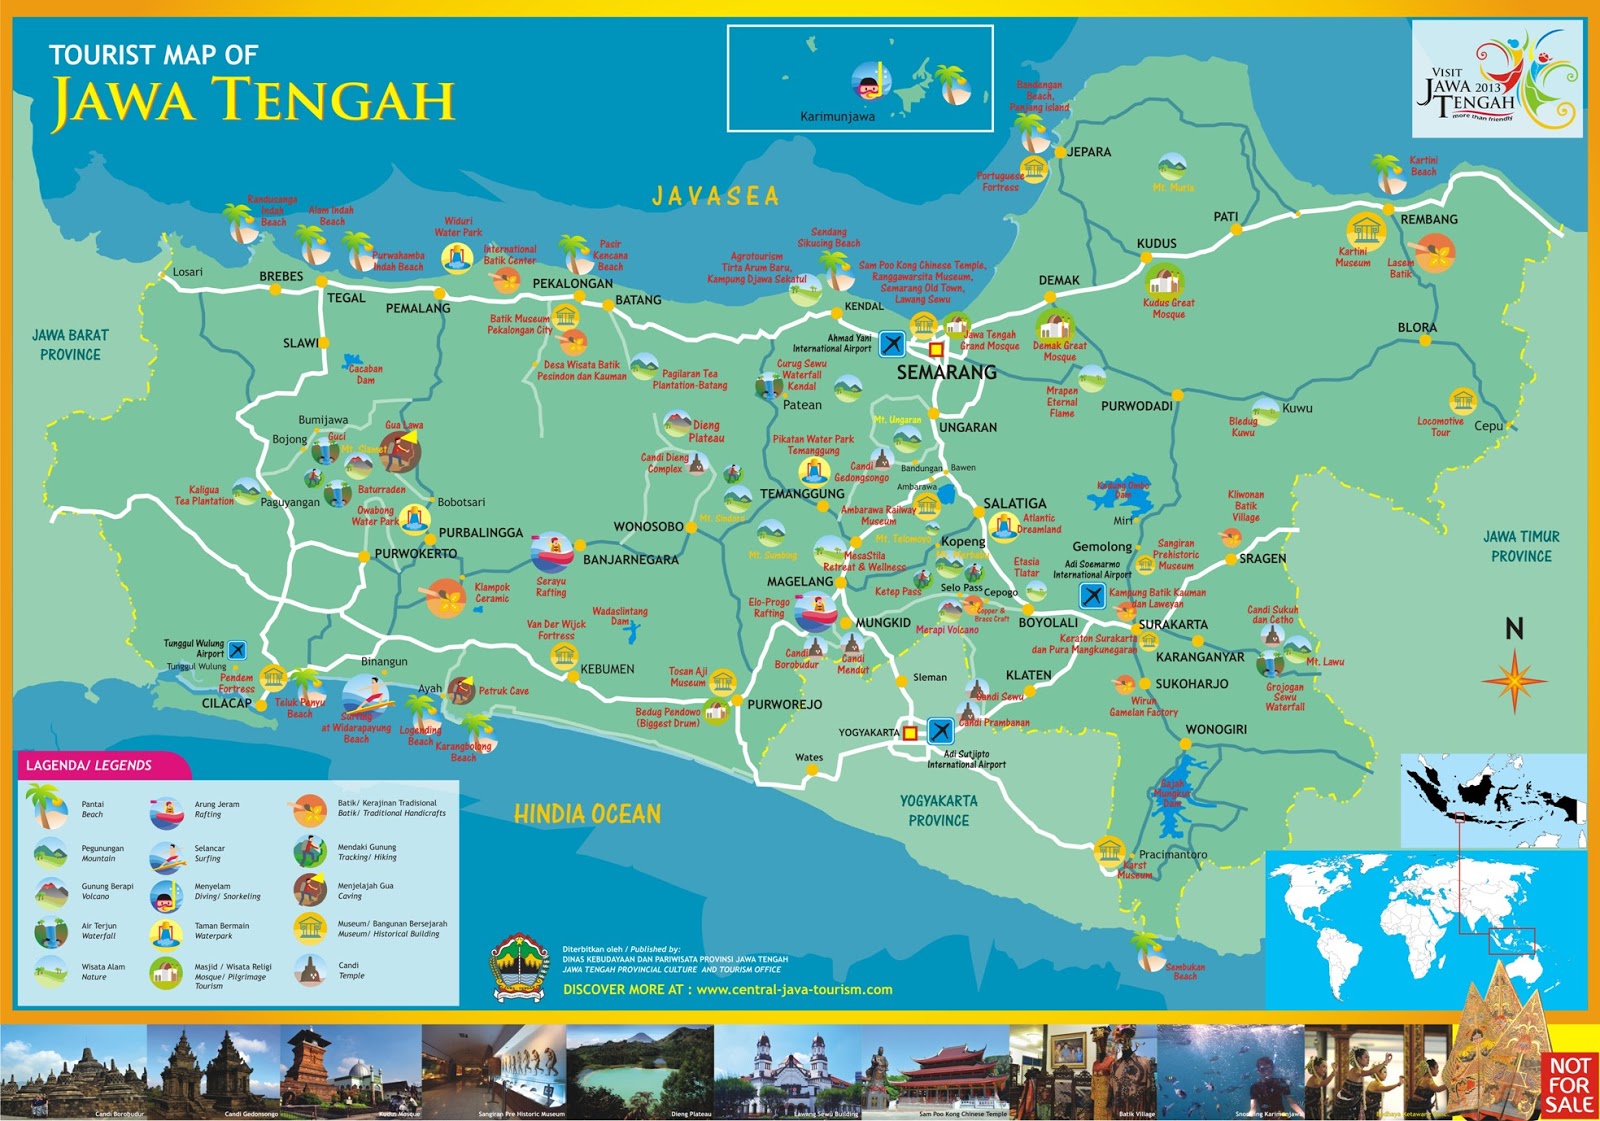 Peta Jogja Lengkap Tempat Wisata Tempat Wisata Indonesia